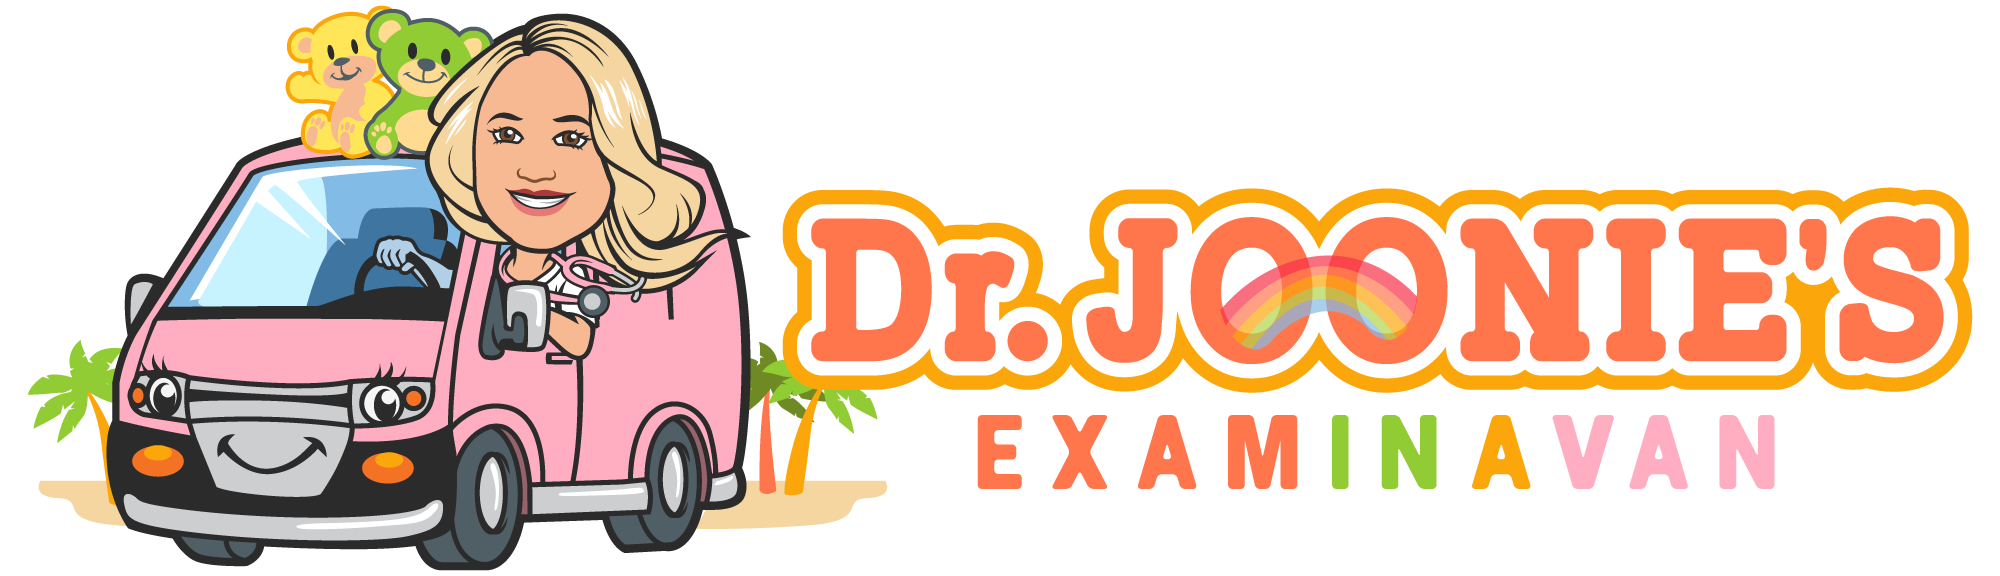 Dr. Joonie's Examinavan